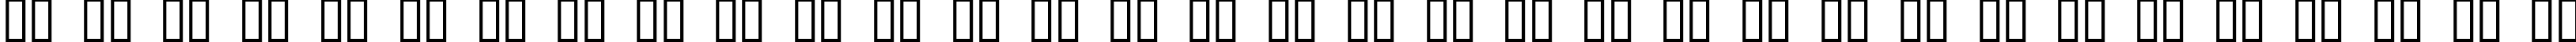 Пример написания русского алфавита шрифтом Cenobyte